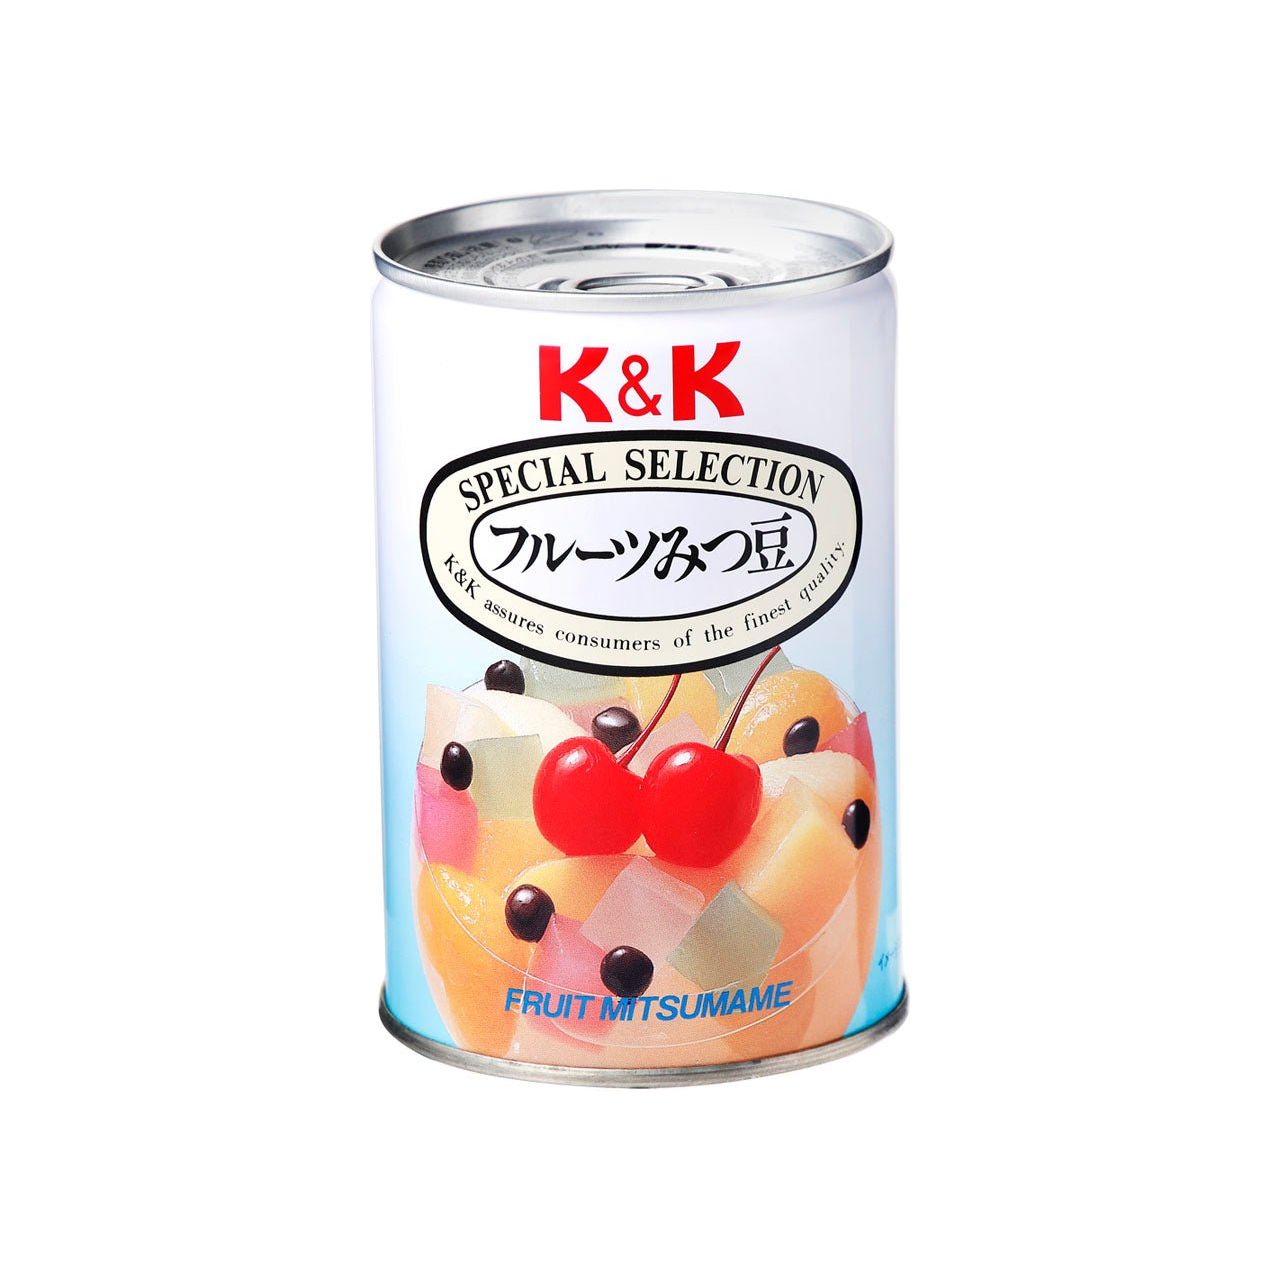 K & K Fruit Mitsu beans (5 kinds of fruit, agar, red pods)